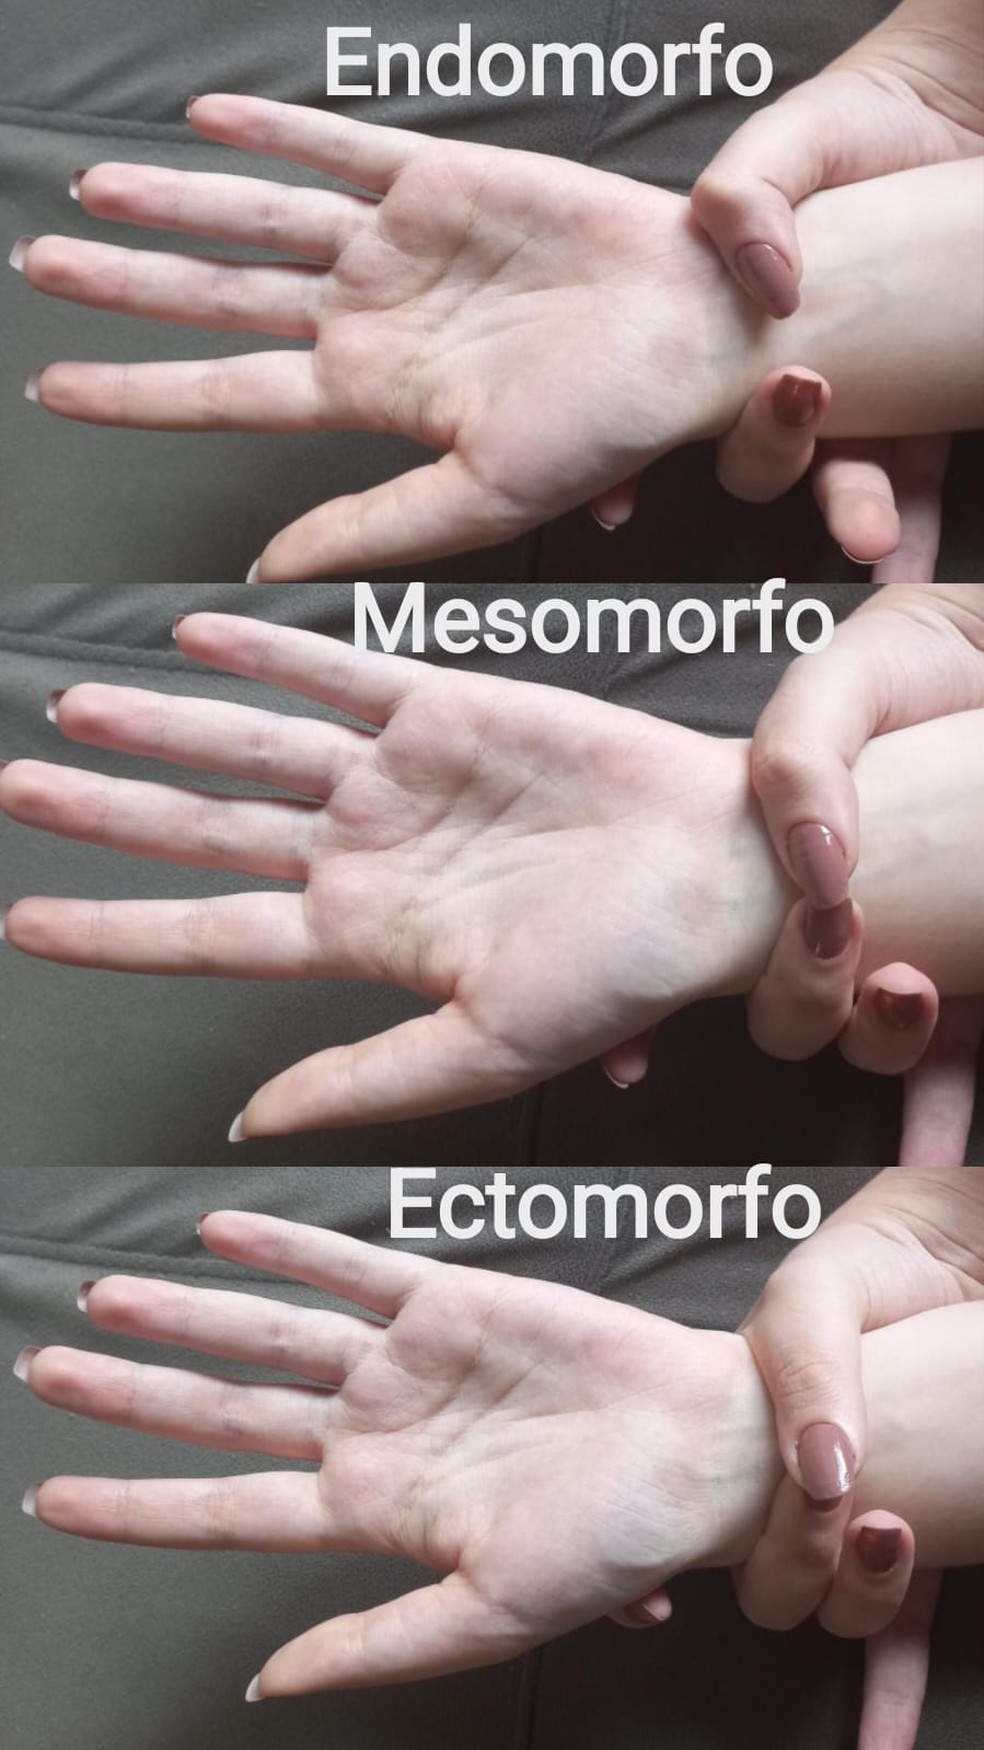 De cima para baixo: endomorfo, mesomorfo e ectomorfo  — Foto: Divulgação